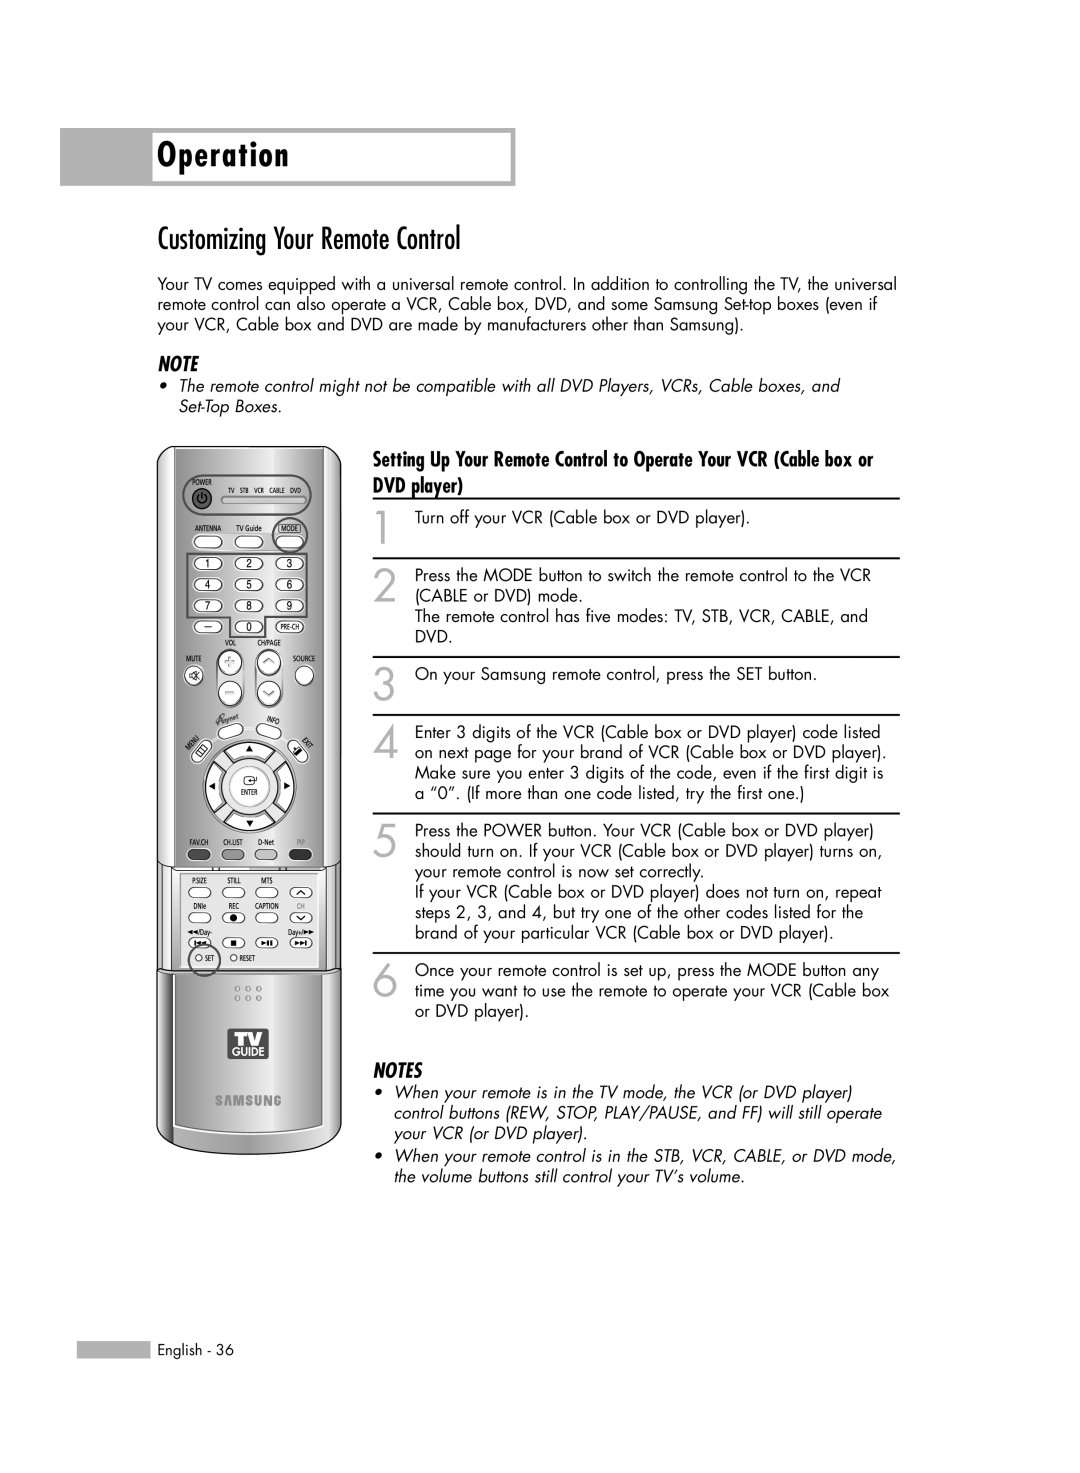 Samsung HL-R6167W, HL-R5067W, HL-R5667W manual Customizing Your Remote Control, DVD player 